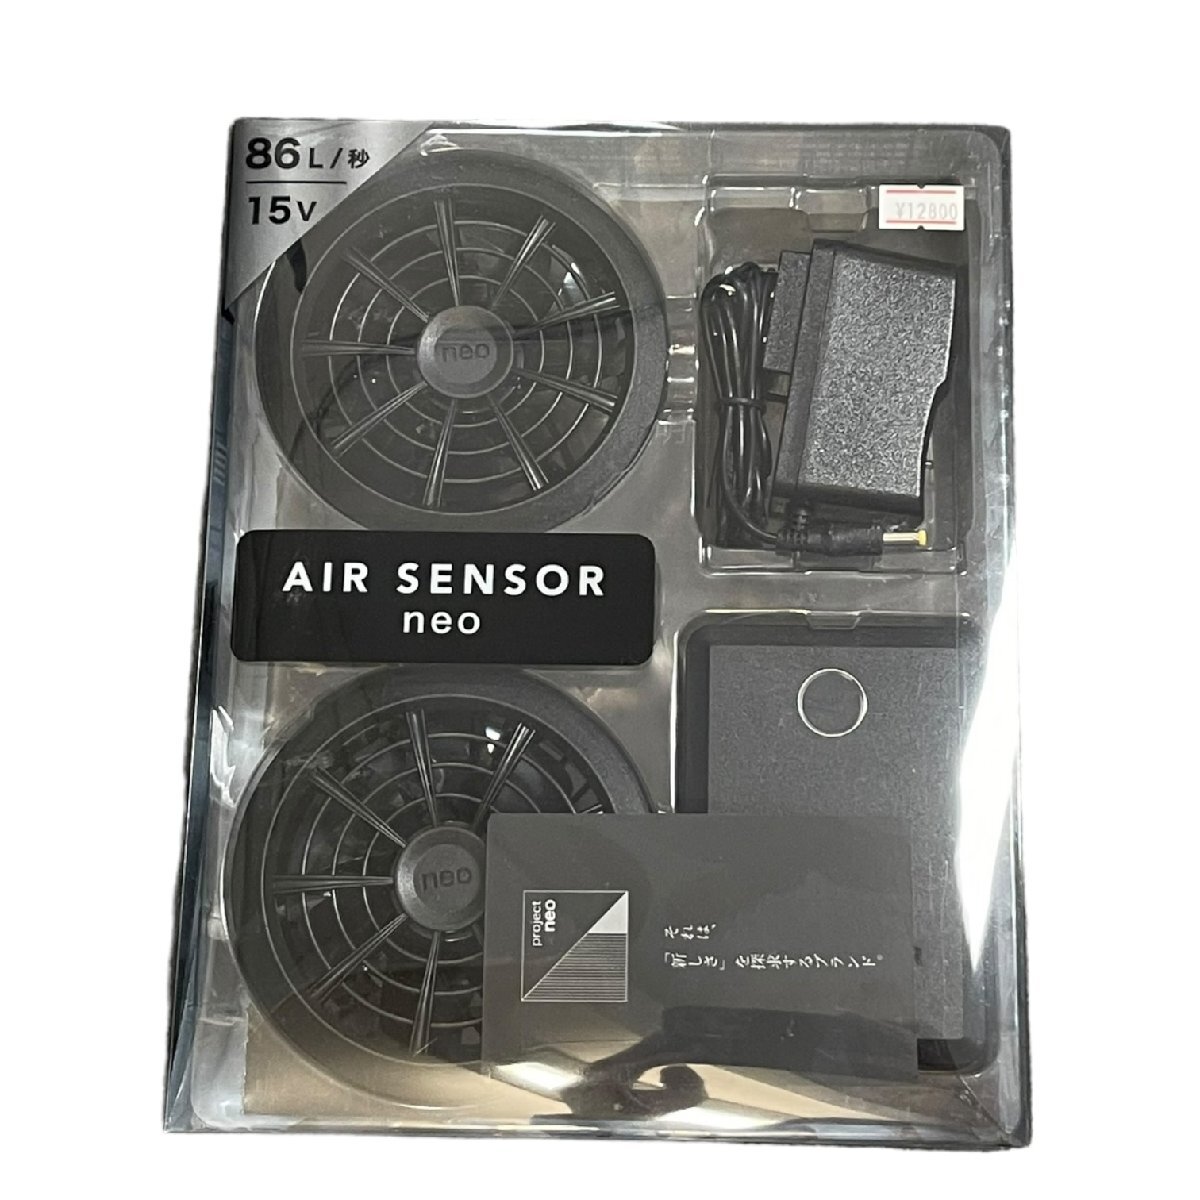 L18407RF【未使用】AIR SENSOR neo エアセンサー ネオ KS-100 ファンバッテリー 86L/秒 15Vの画像1